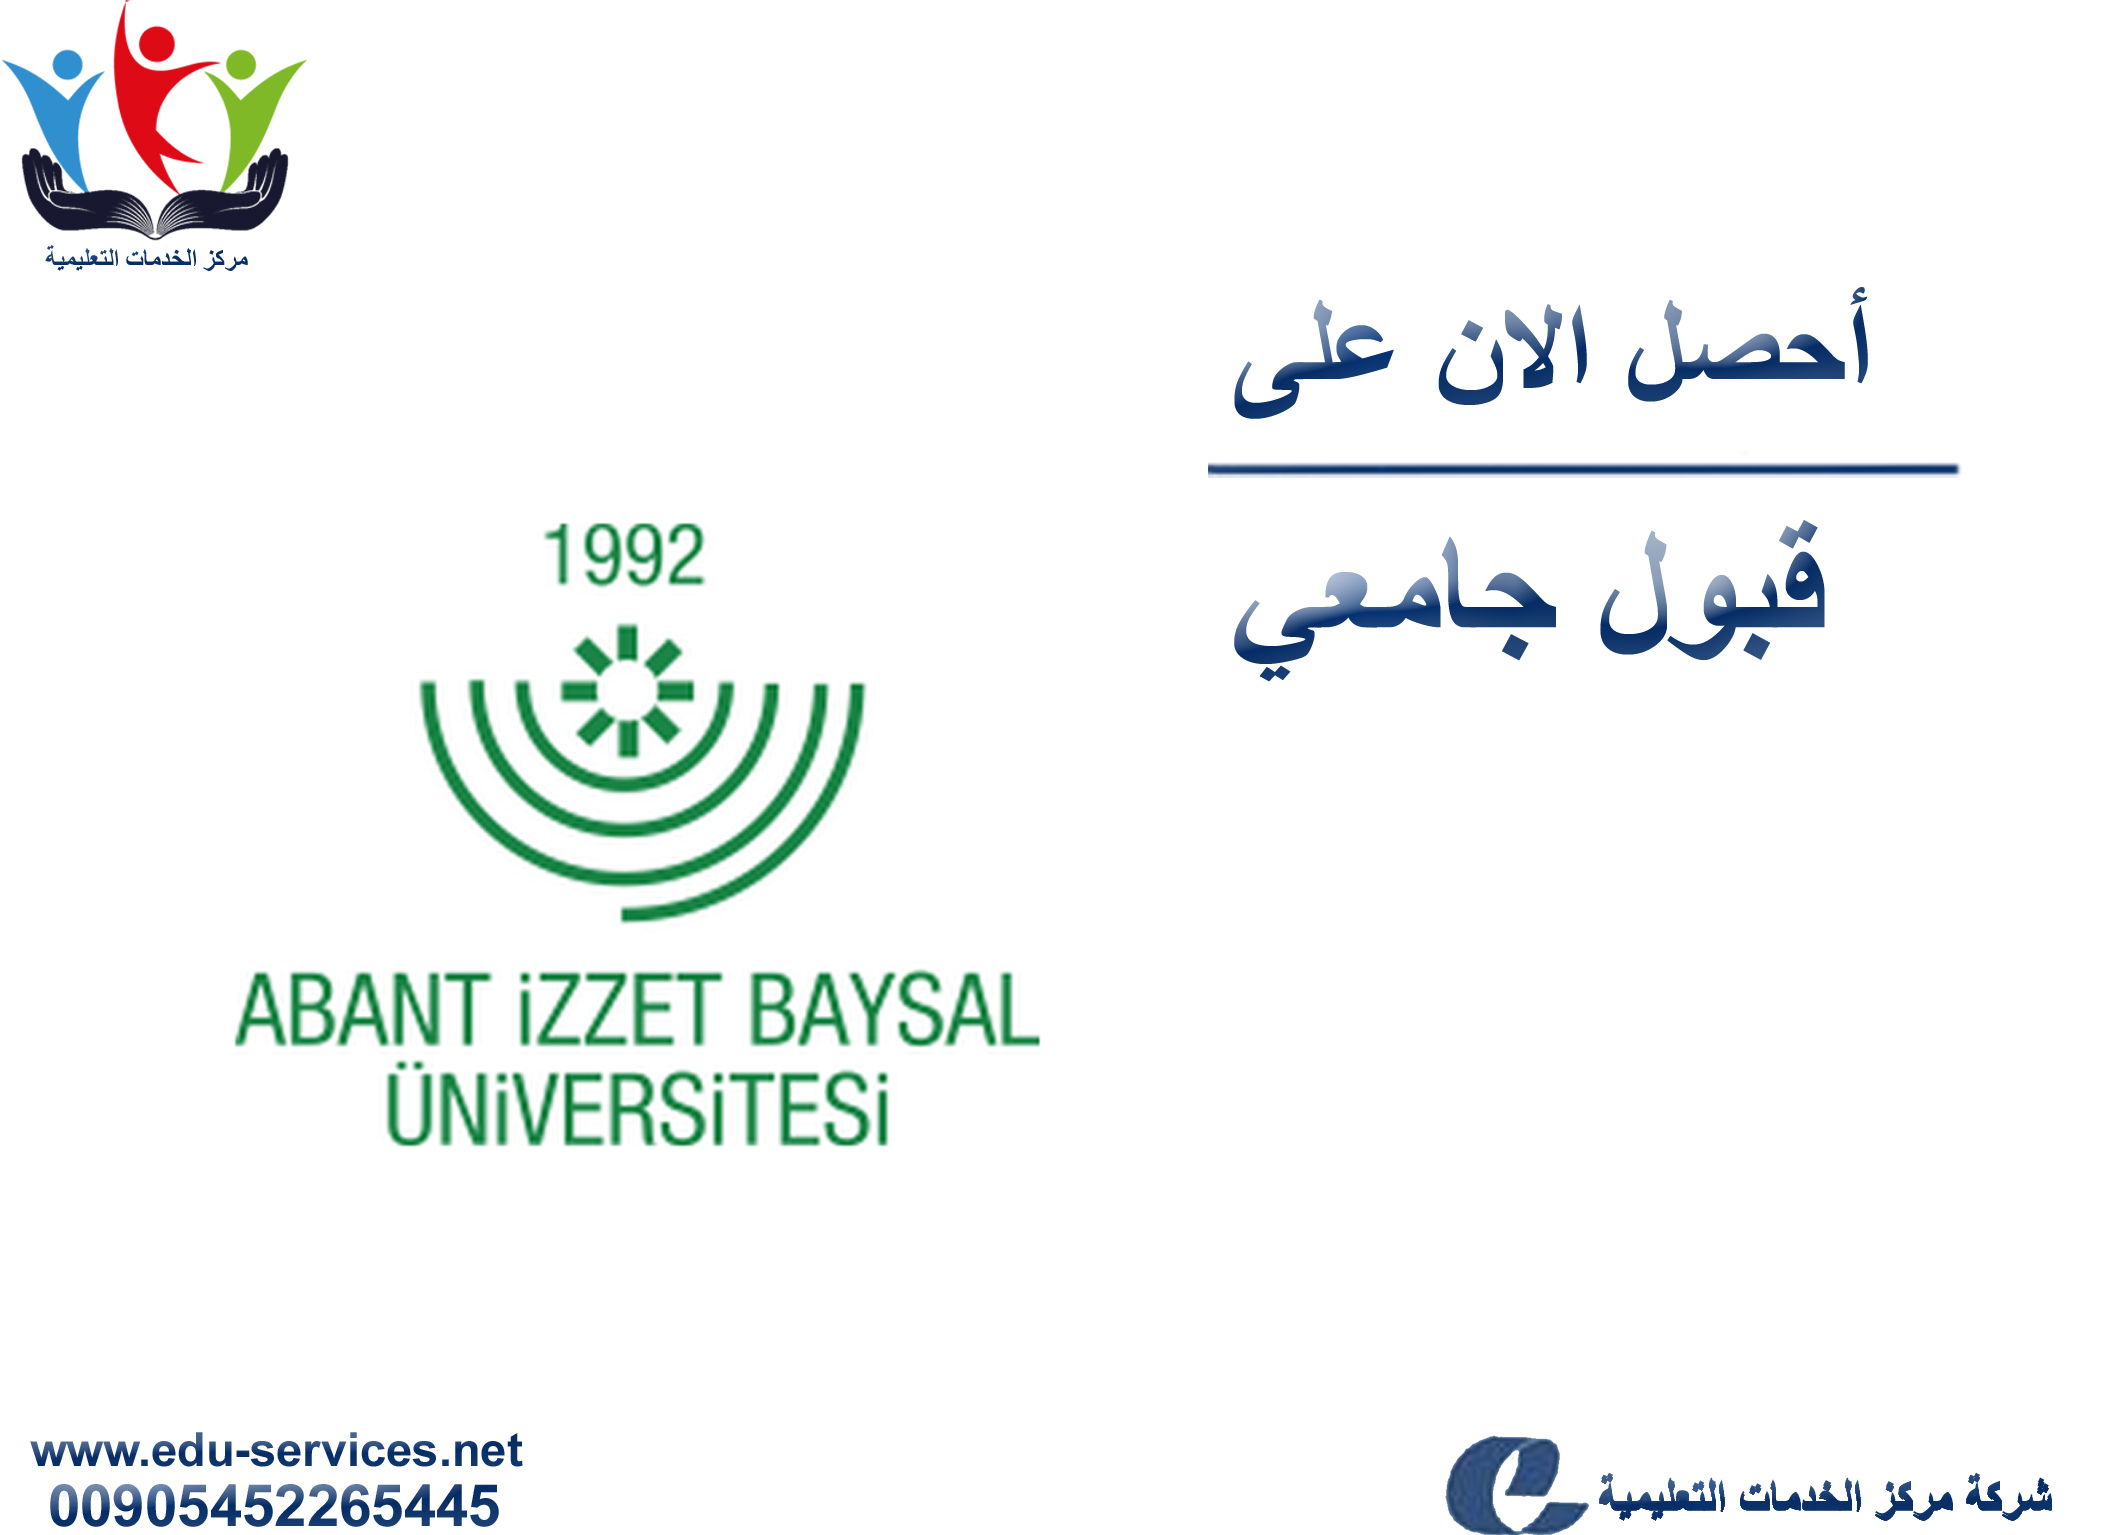 افتتاح التسجيل في جامعة ابانت عزت بايسال للعام 2018-2019